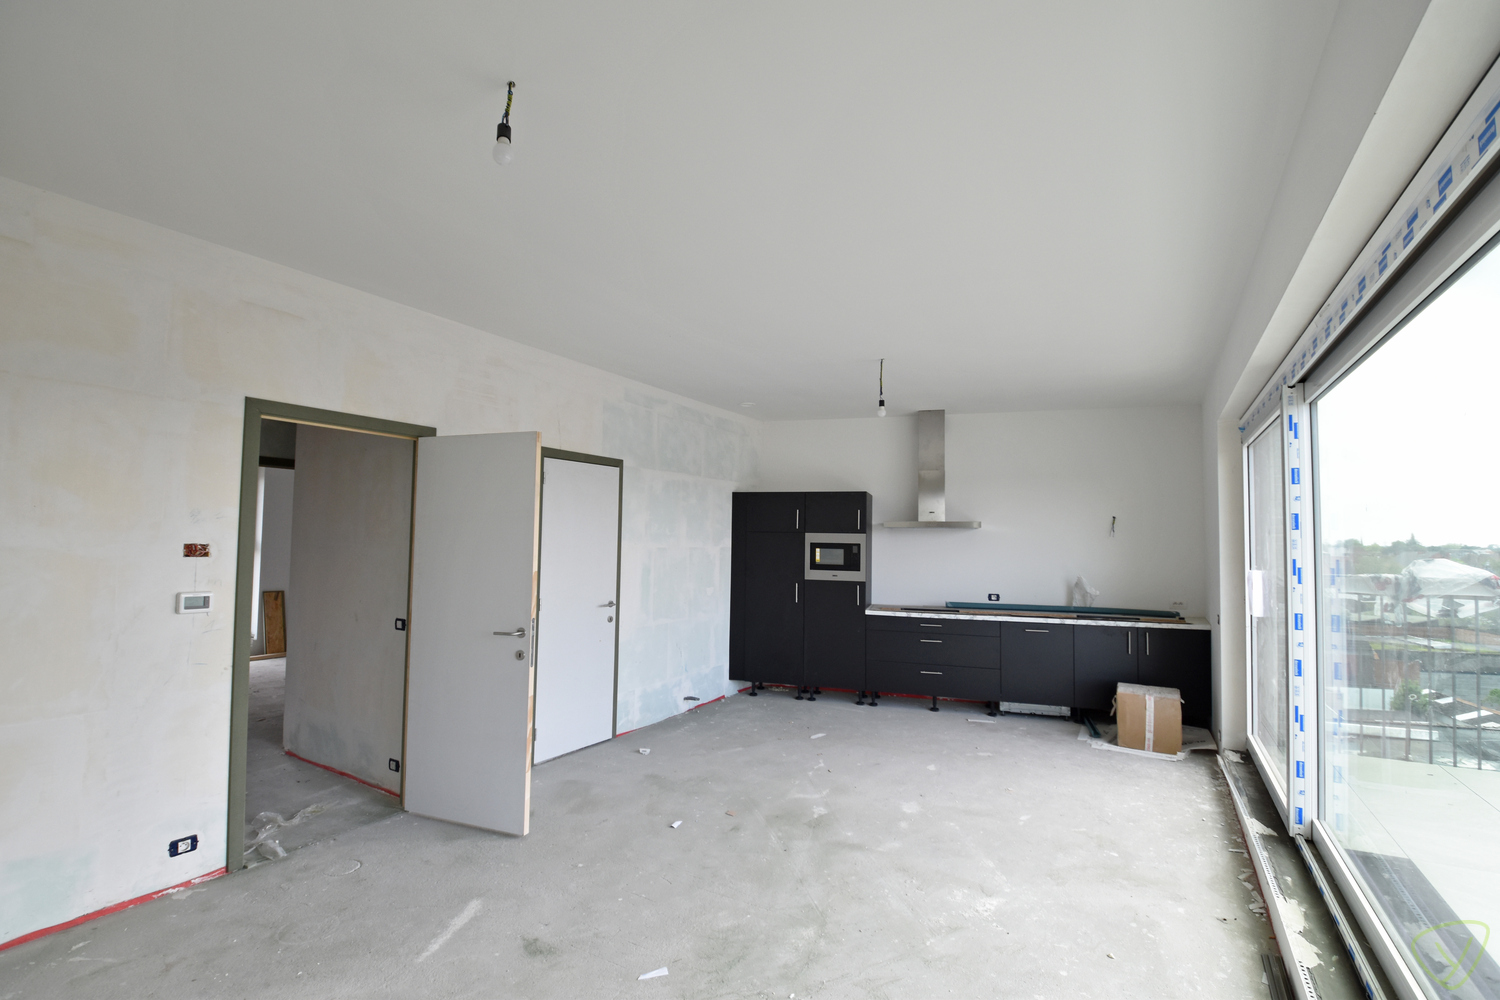 Exclusief appartement te koop in de residentie "Molenpark" gelegen op de Molenstraat foto 5